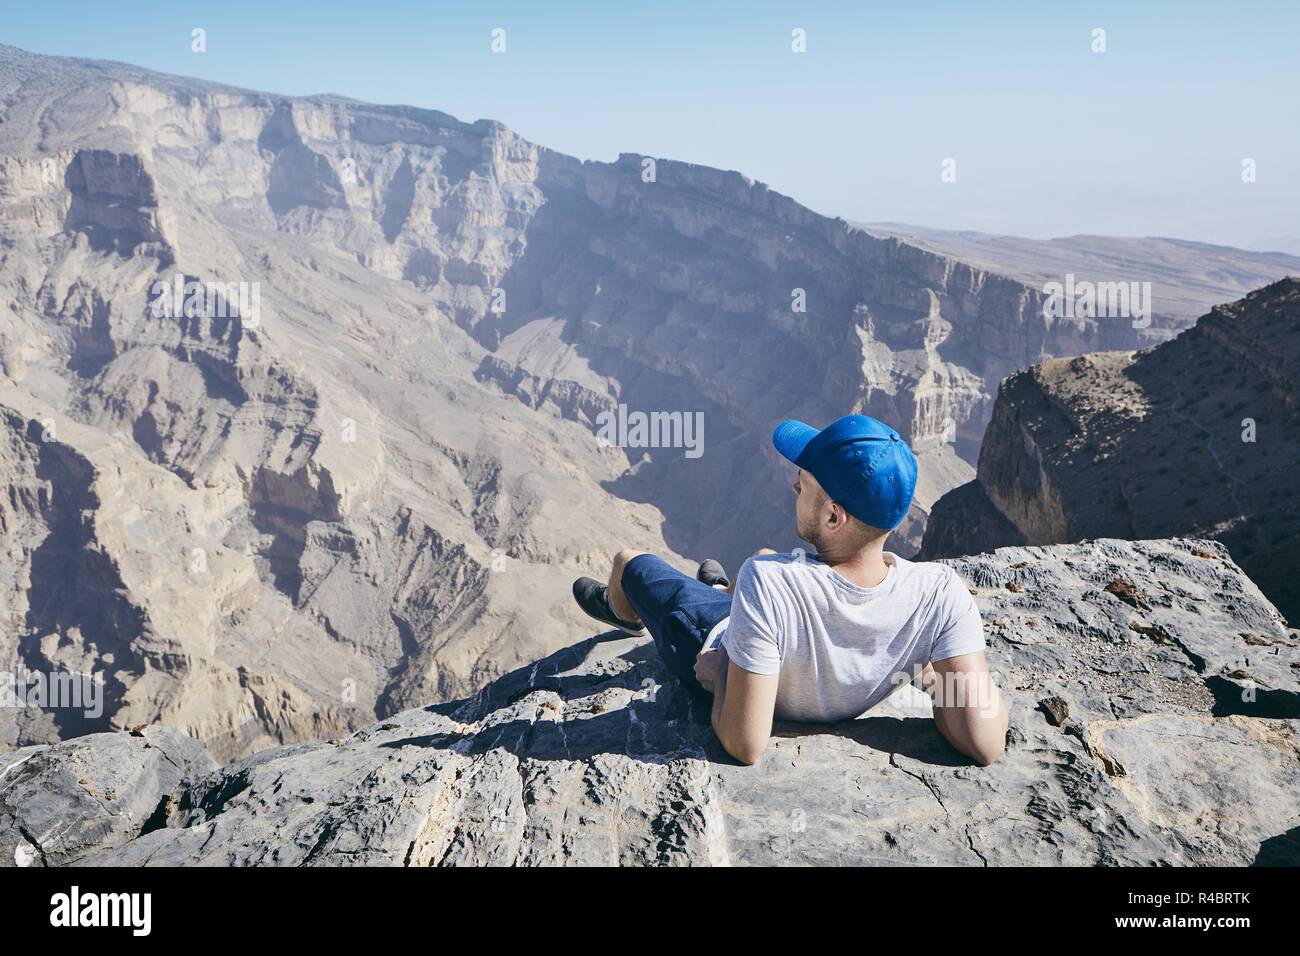 Junge touristische ruht auf den Rand der Klippe. Jebel Akhdar, Grand Canyon von Oman. Stockfoto